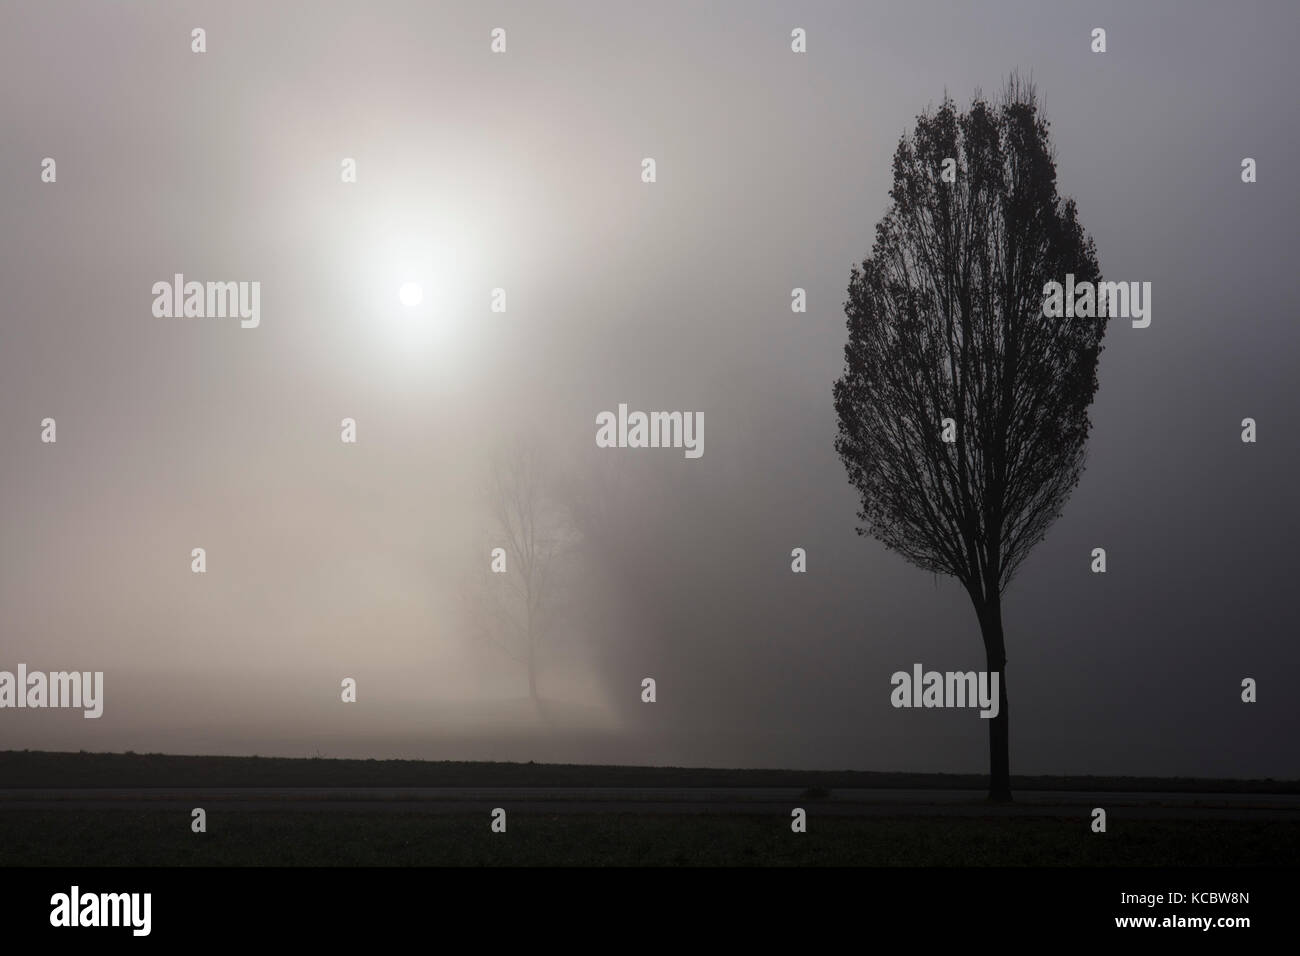 Arbre généalogique et brouillard, silhouette, Frauenfeld, Thurgovie, Suisse Banque D'Images